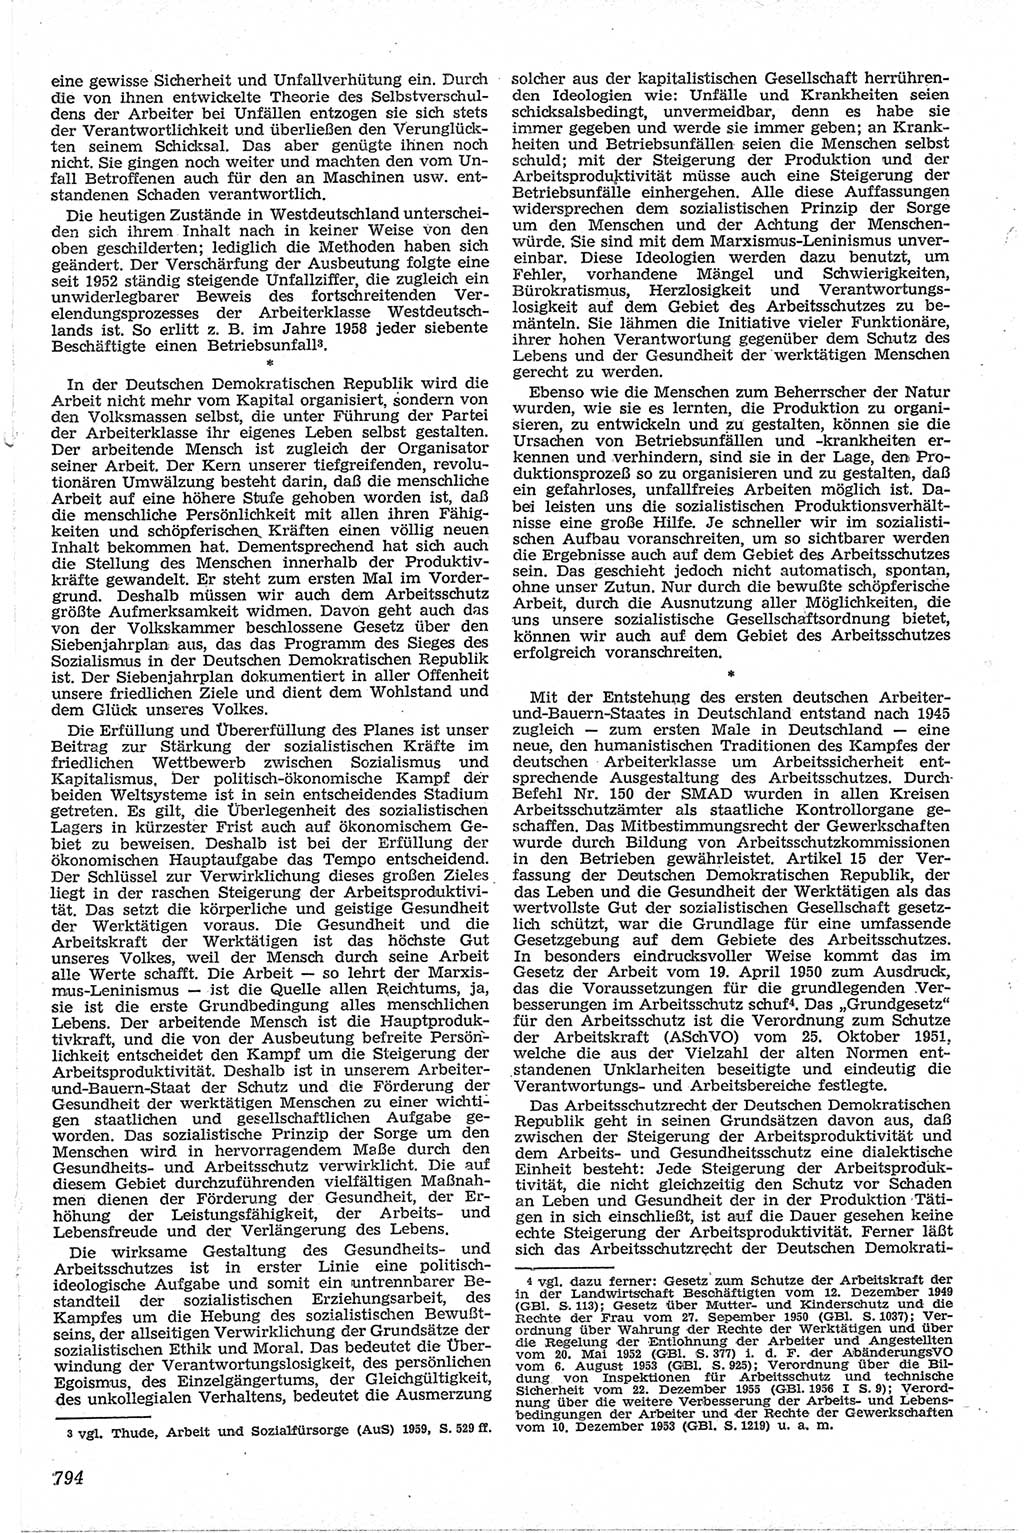 Neue Justiz (NJ), Zeitschrift für Recht und Rechtswissenschaft [Deutsche Demokratische Republik (DDR)], 13. Jahrgang 1959, Seite 794 (NJ DDR 1959, S. 794)